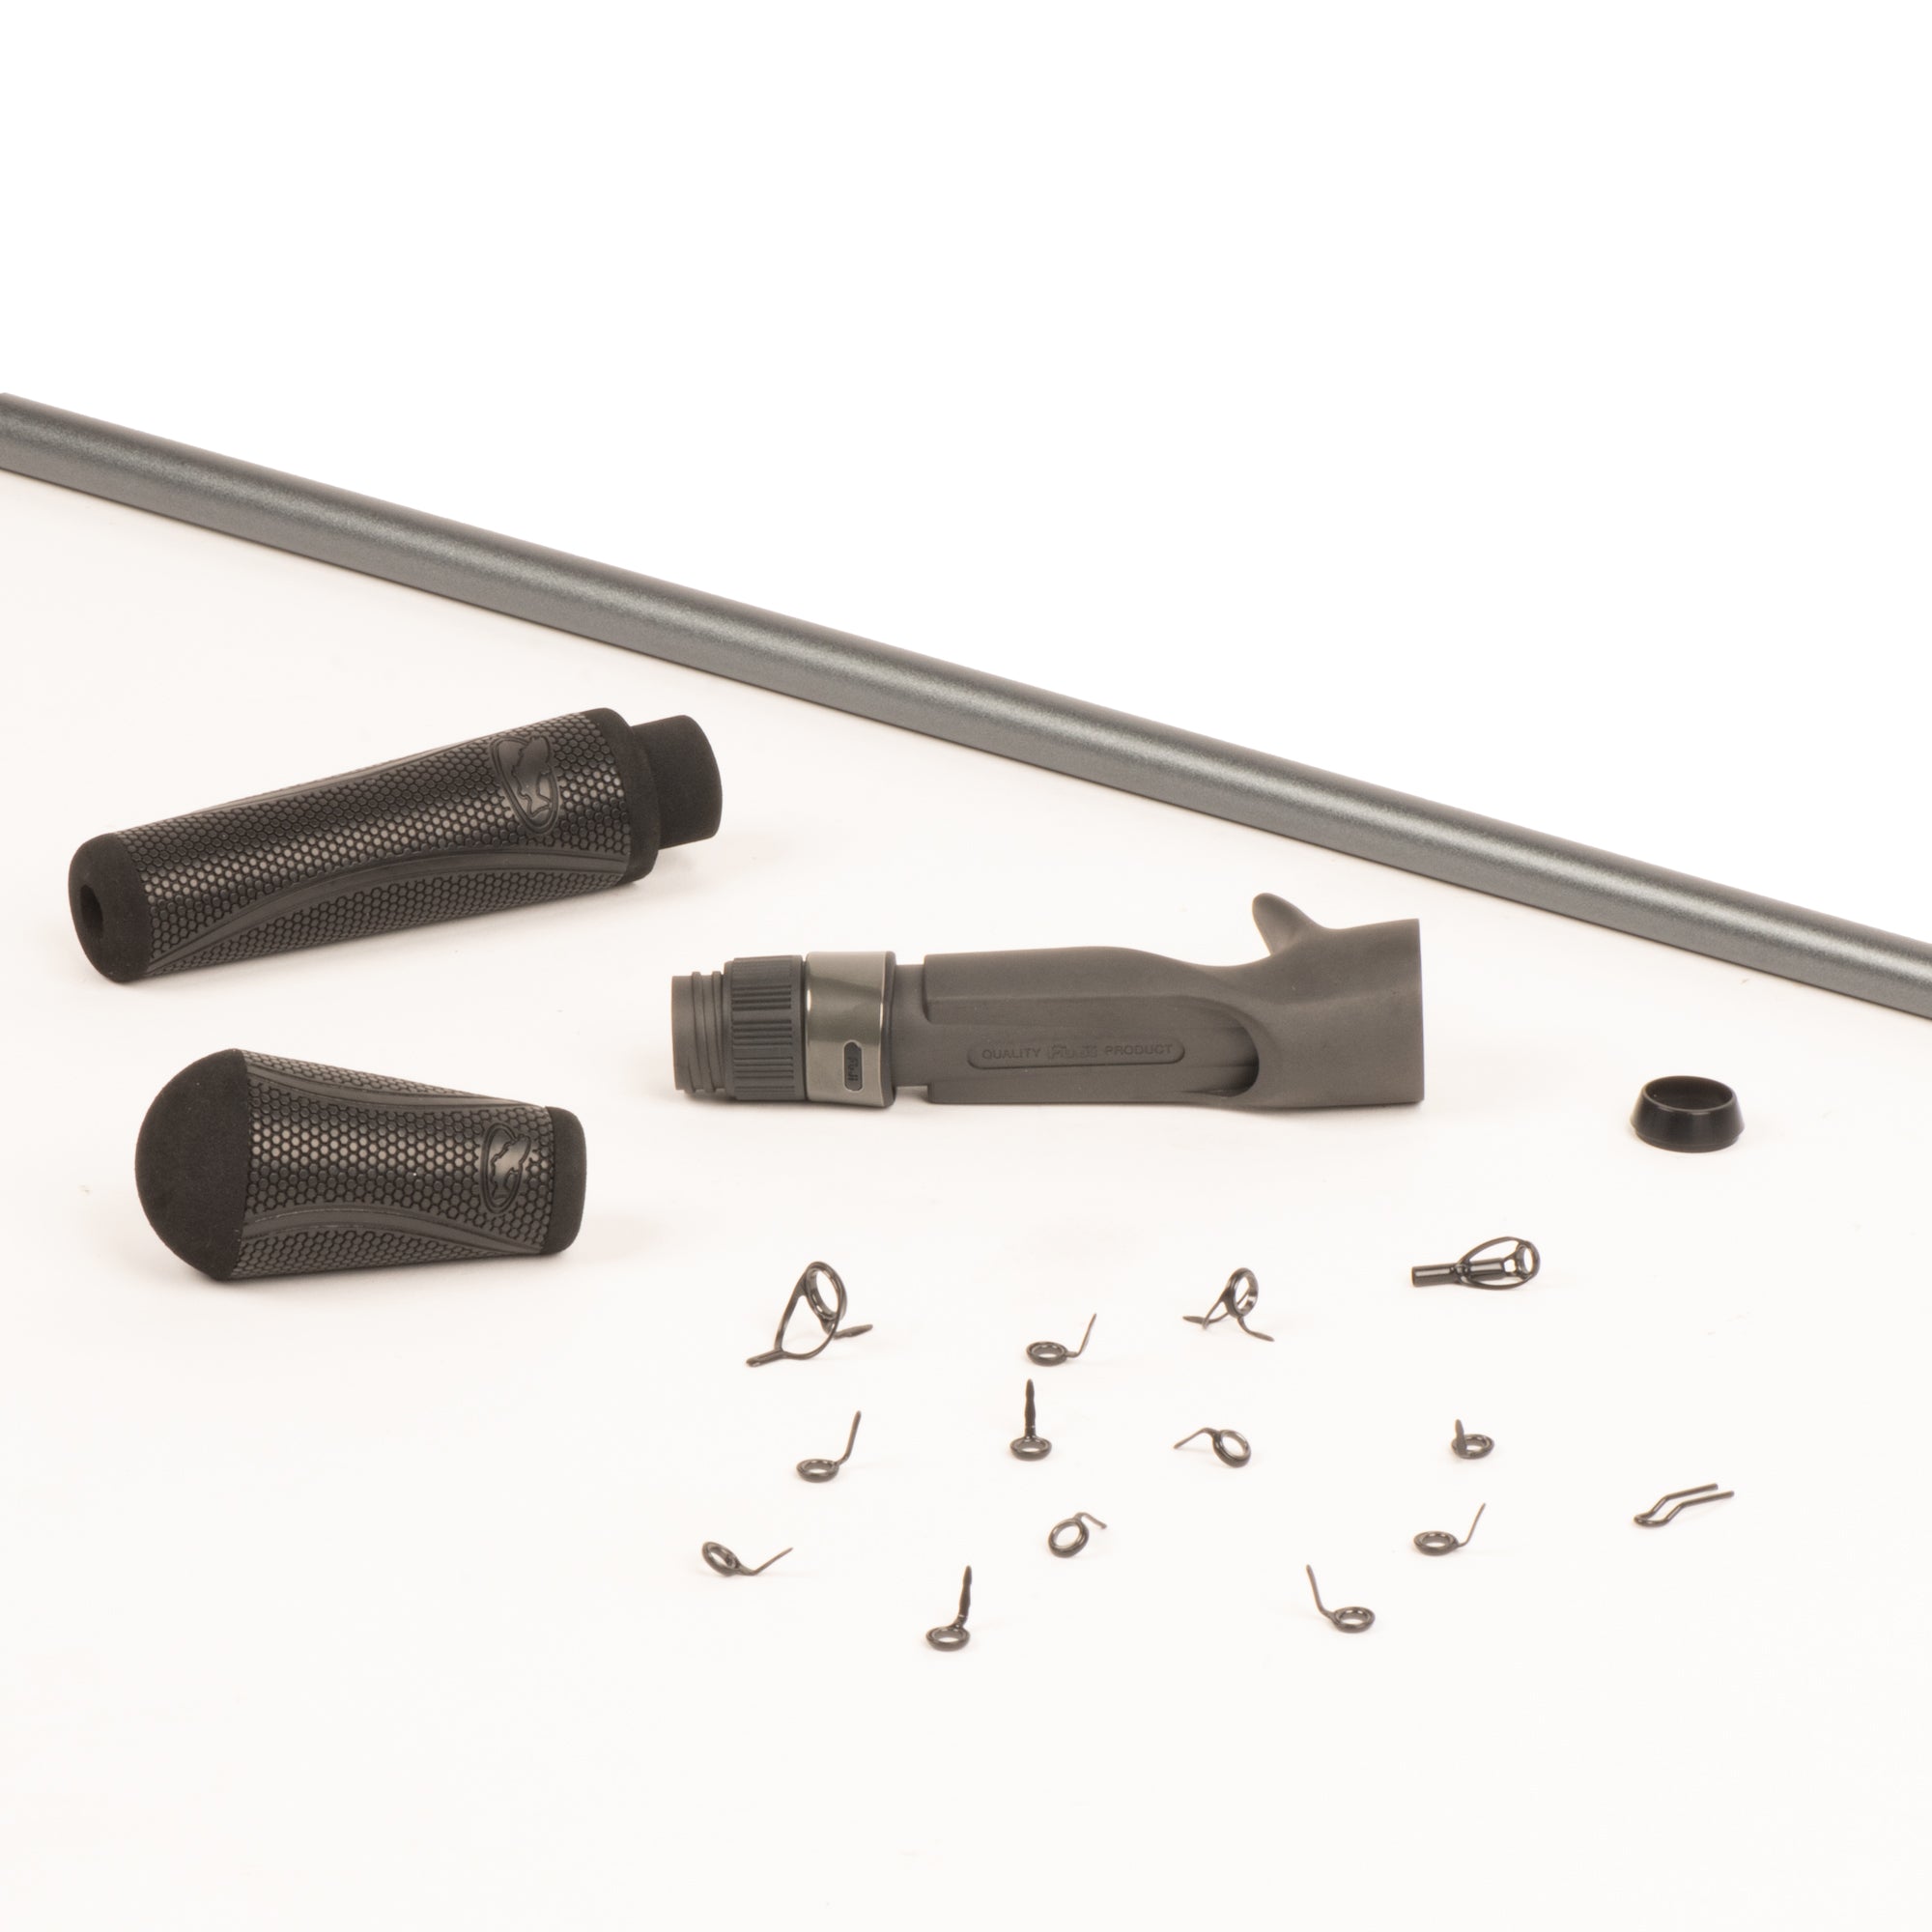 Matt Stefan 7'3" Med-Heavy Super Versatile Baitcasting Rod Component Kit